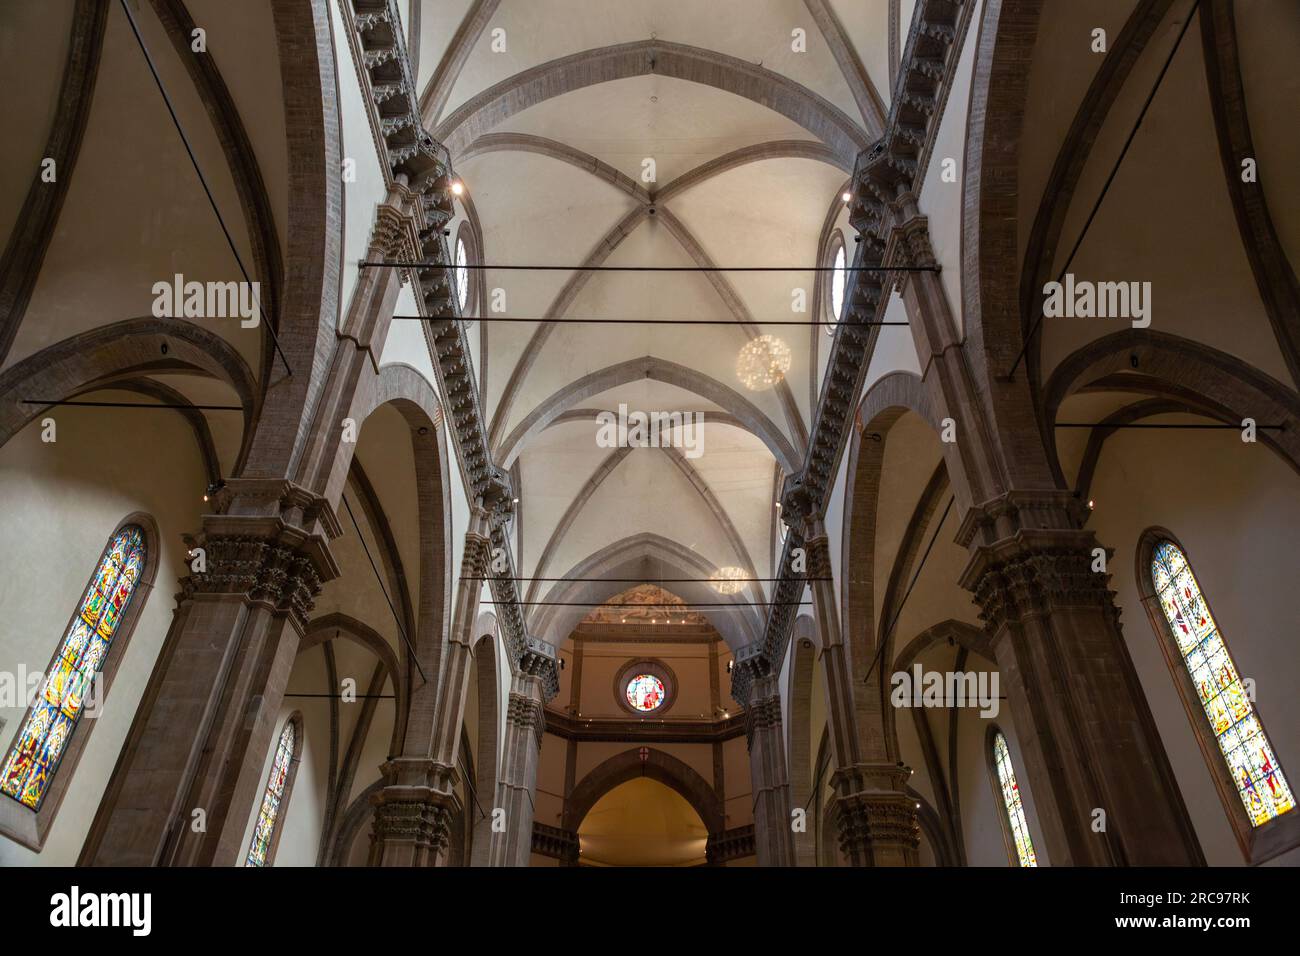 Dettaglio interno dal Duomo di Firenze, Cattedrale di Santa Maria del Fiore a Firenze. L'edificio è stato completato nel 1436. Foto Stock